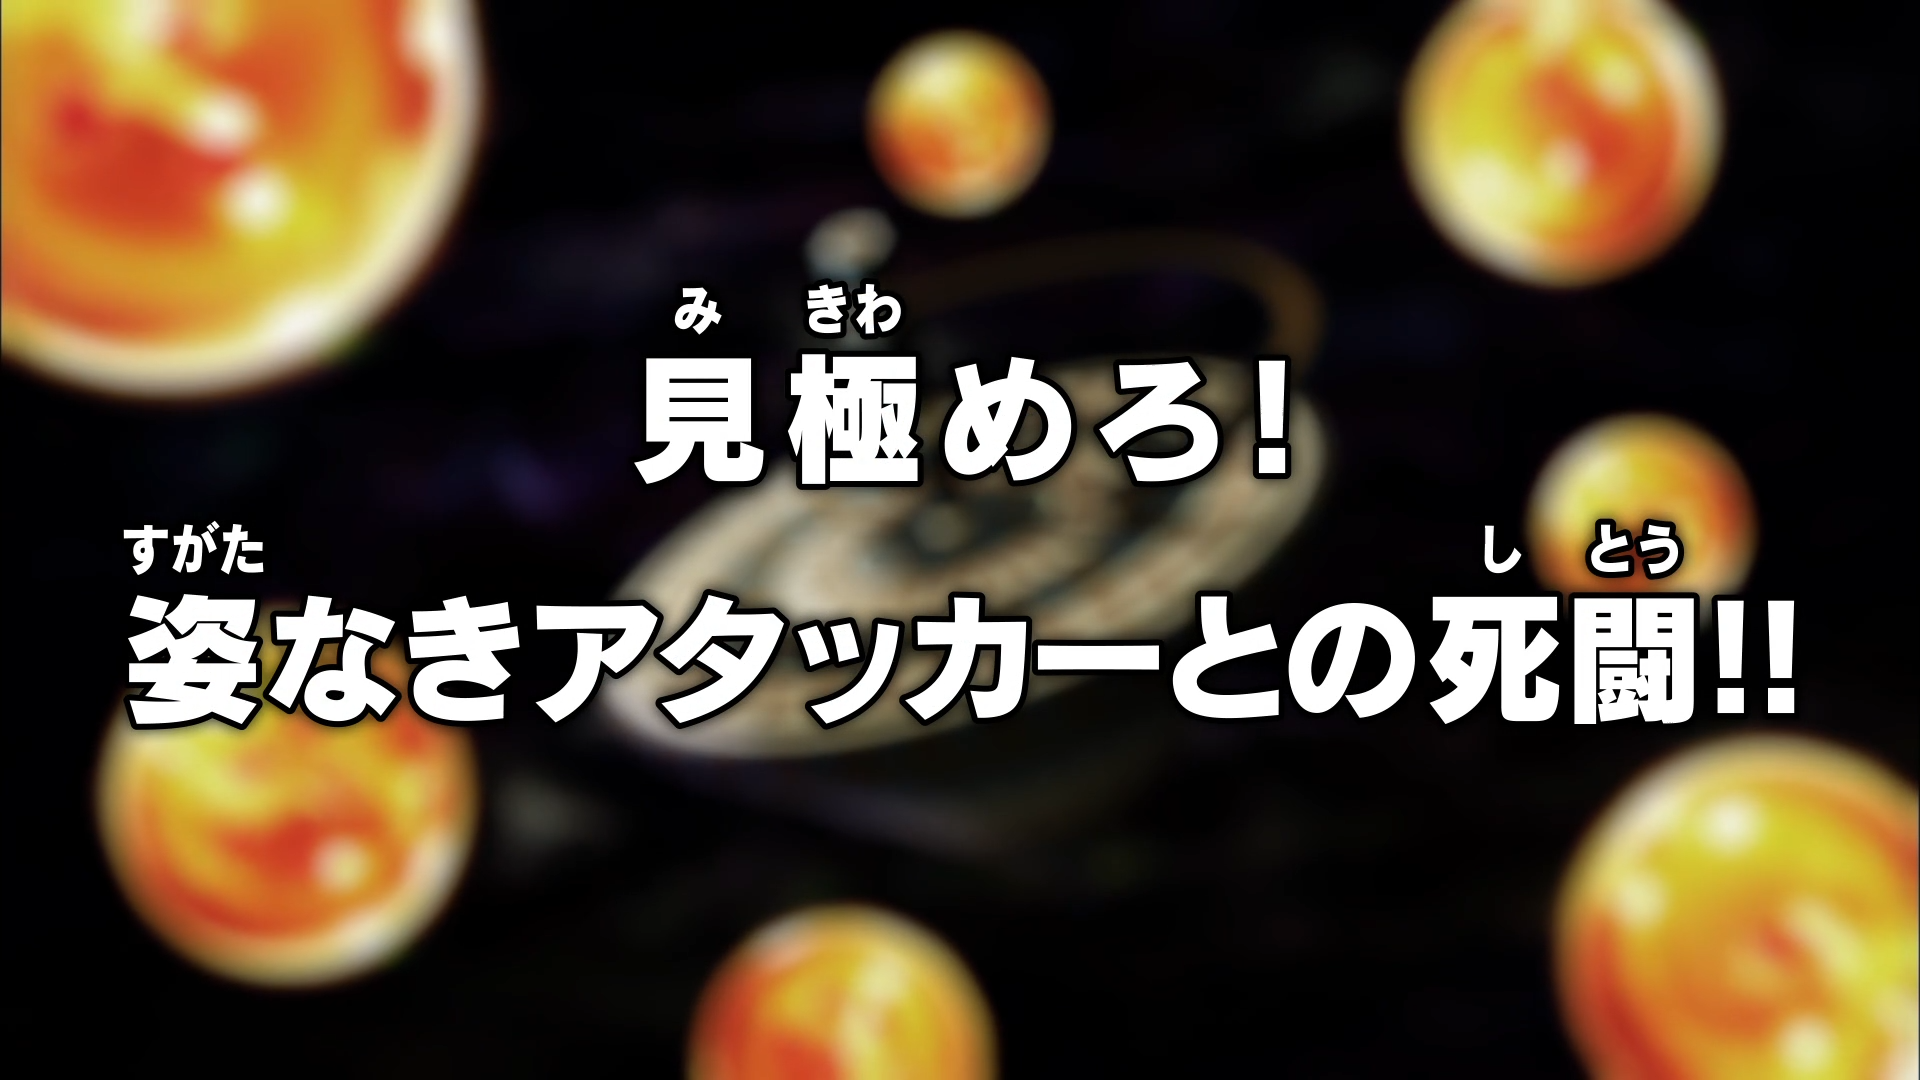 Dragon Ball Super: Ep. 96 - No Mundo do Vazio, começa a saga da  Sobrevivência Universal!